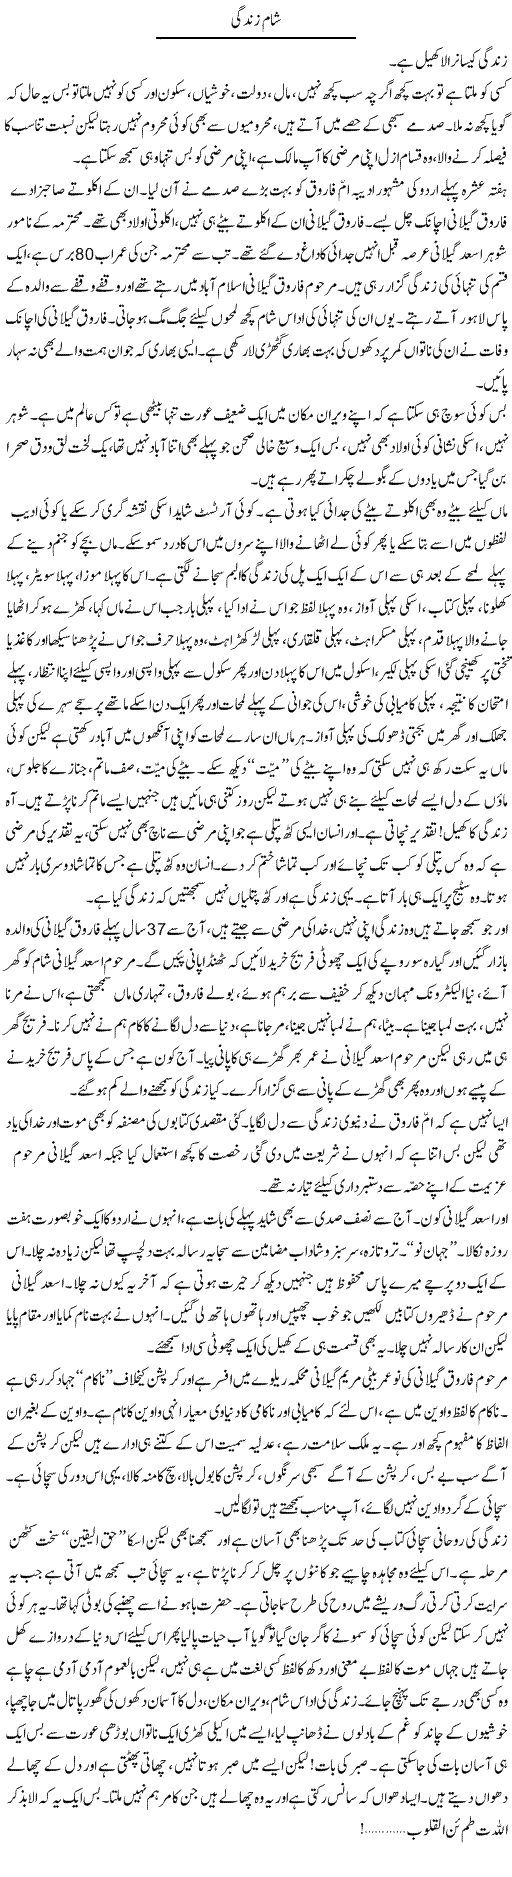 Night Life Express Column Abdullah Tariq 21 October 2011